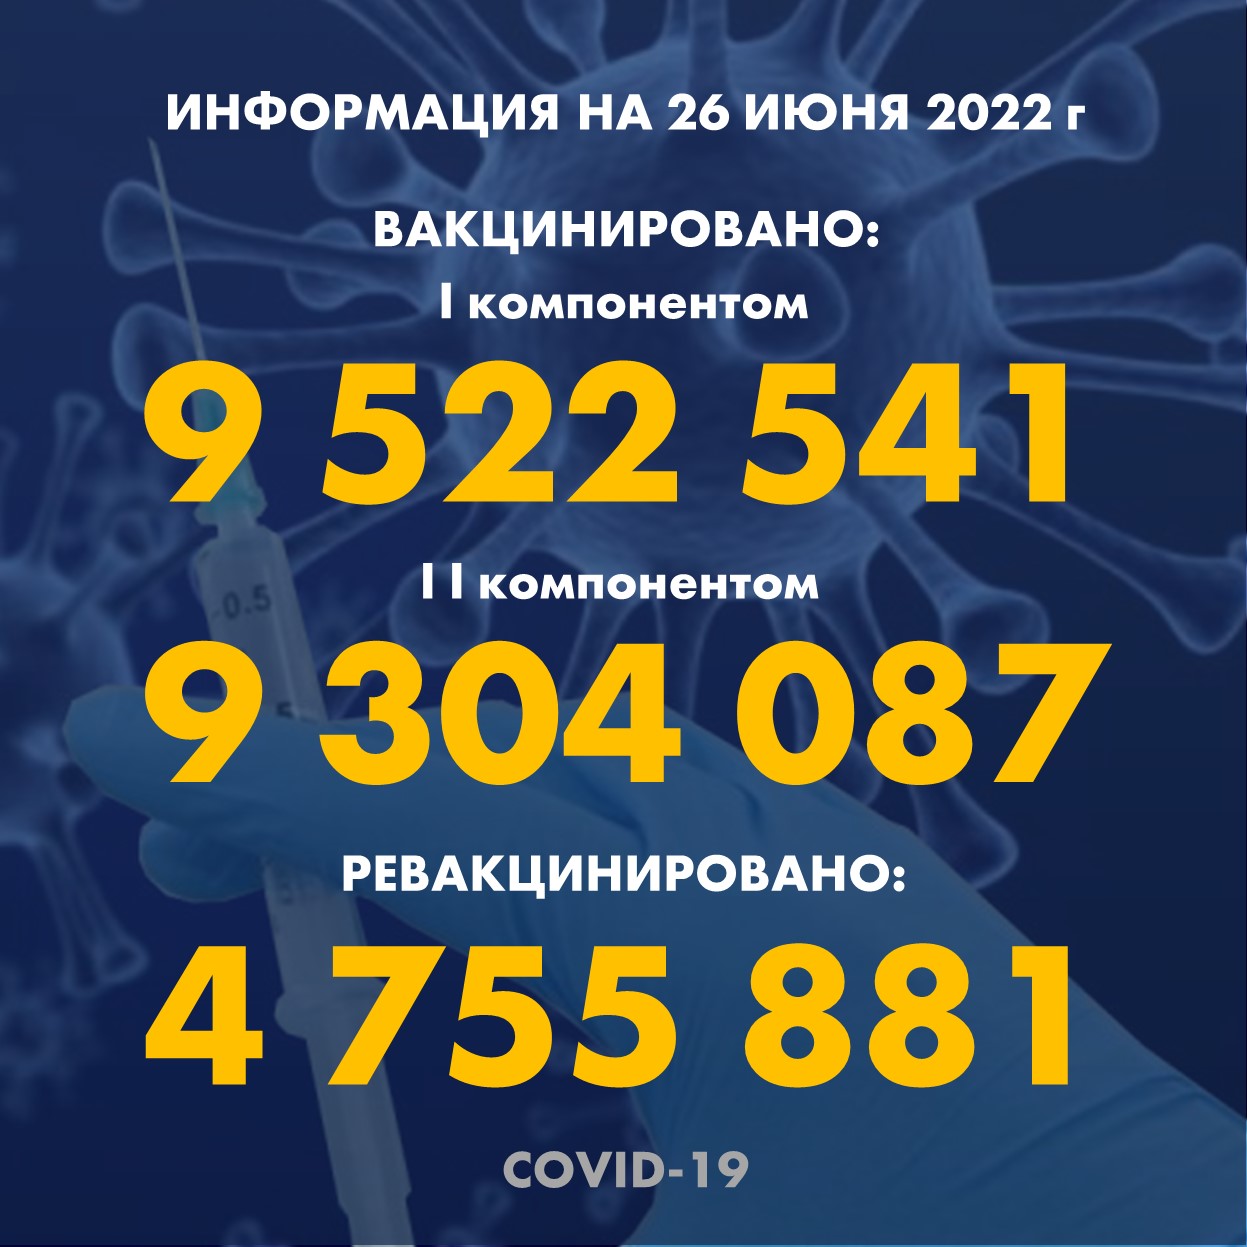 I компонентом 9 522 541 человек провакцинировано в Казахстане на 26.06.2022 г, II компонентом 9 304 087 человек. Ревакцинировано – 4 755 881